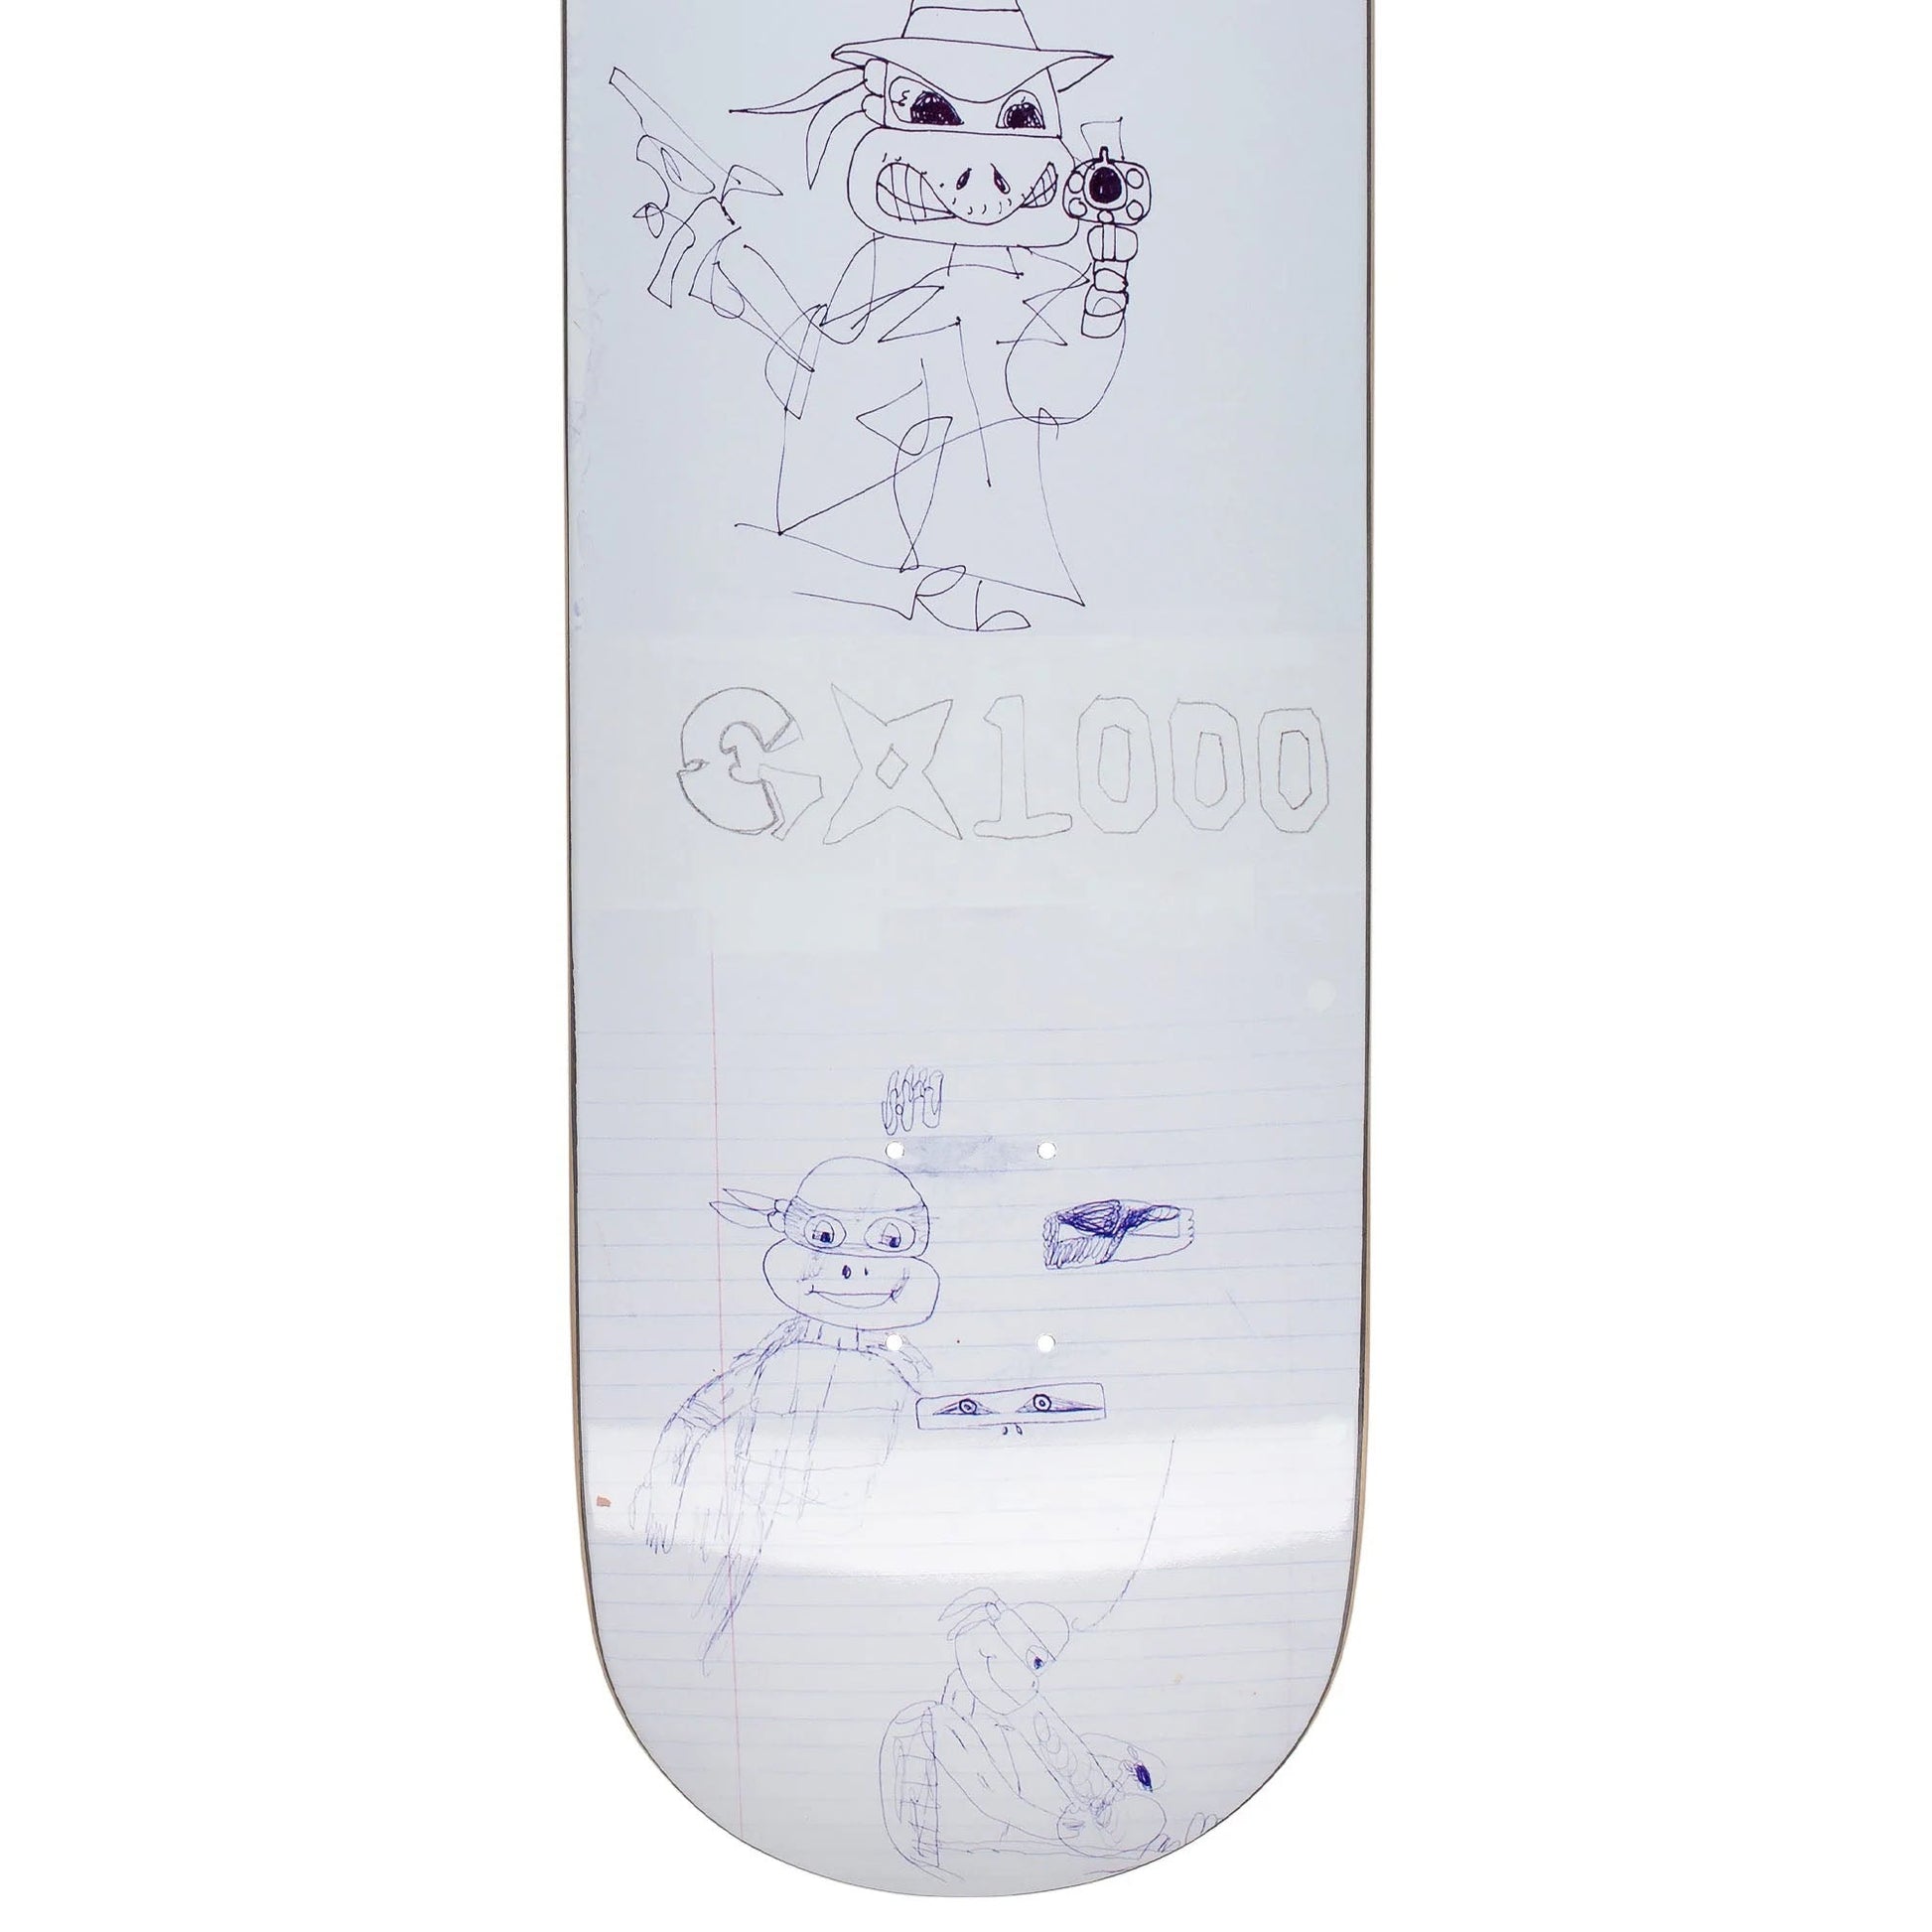 GX1000 Stickup Deck (8.125”) - Tiki Room Skateboards - 3